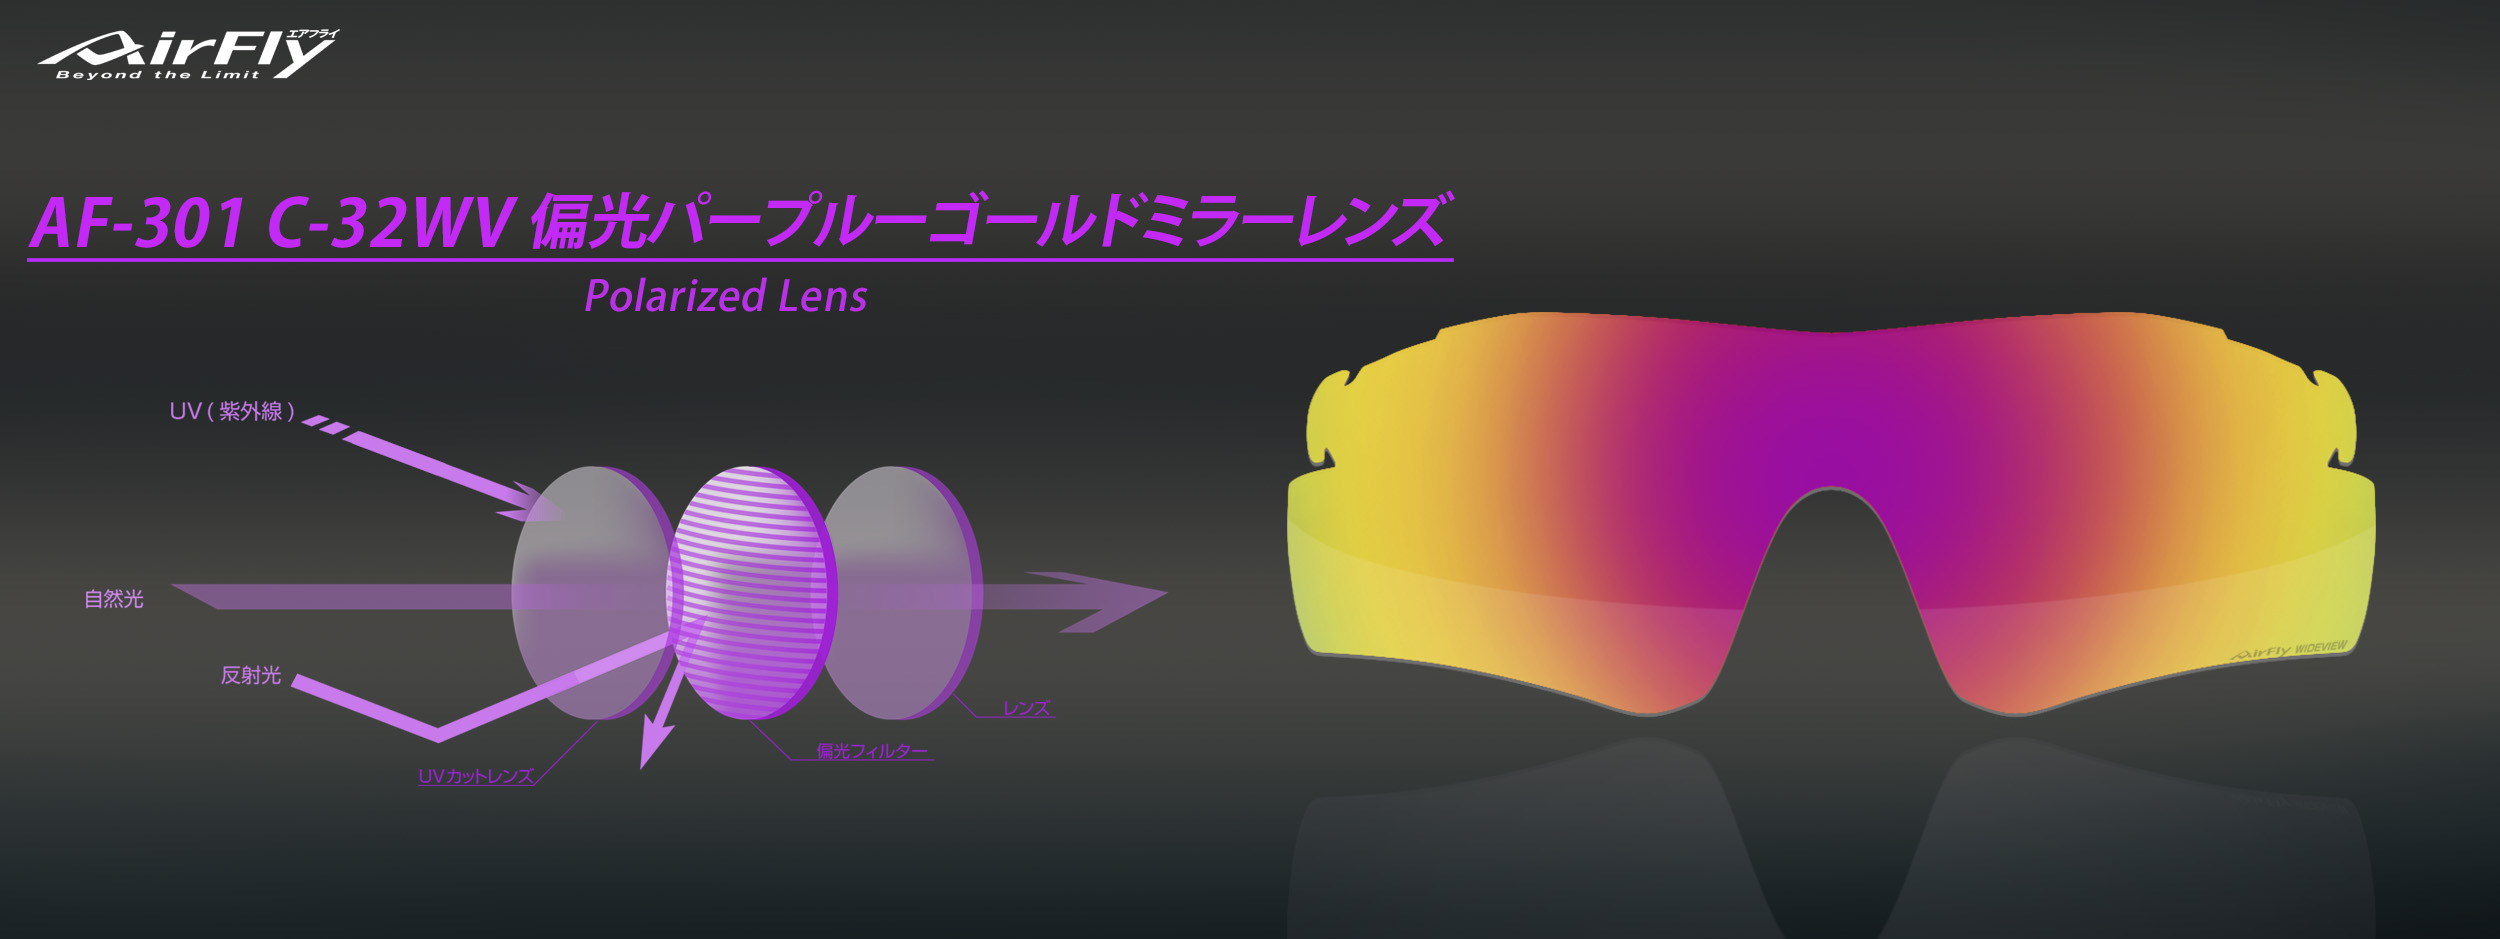 偏光レンズ AF-301 C-32WV 紫外線 UV スポーツサングラス スポーツアイウェア さばえ